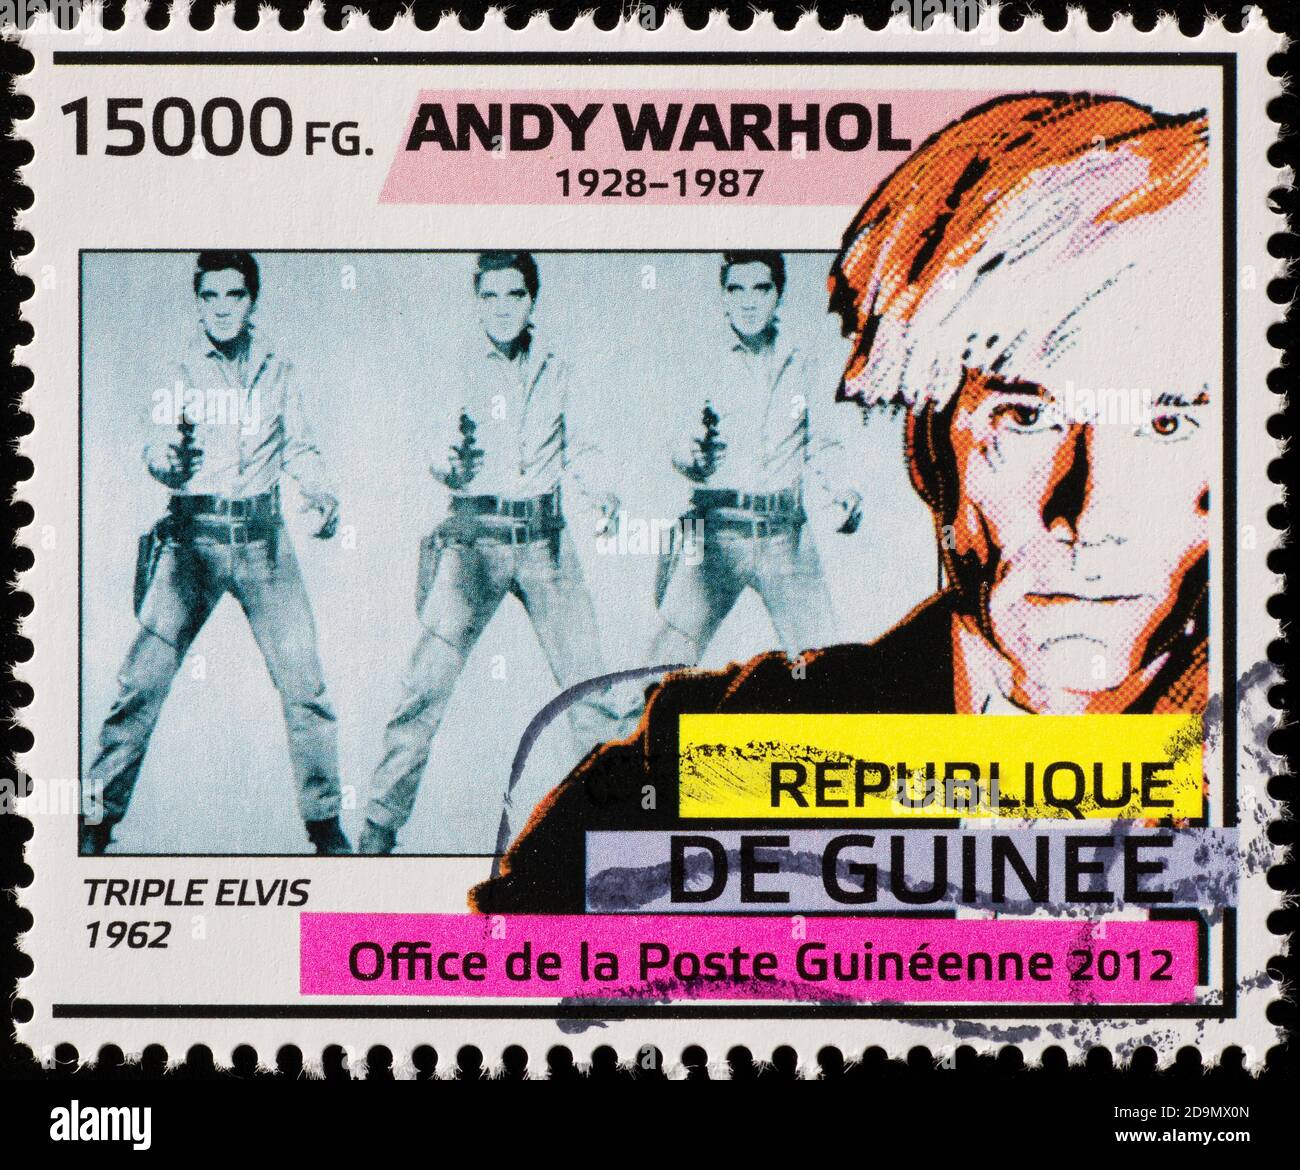 Portraits d'Elvis Presley et d'Andy Warhol sur timbre Banque D'Images